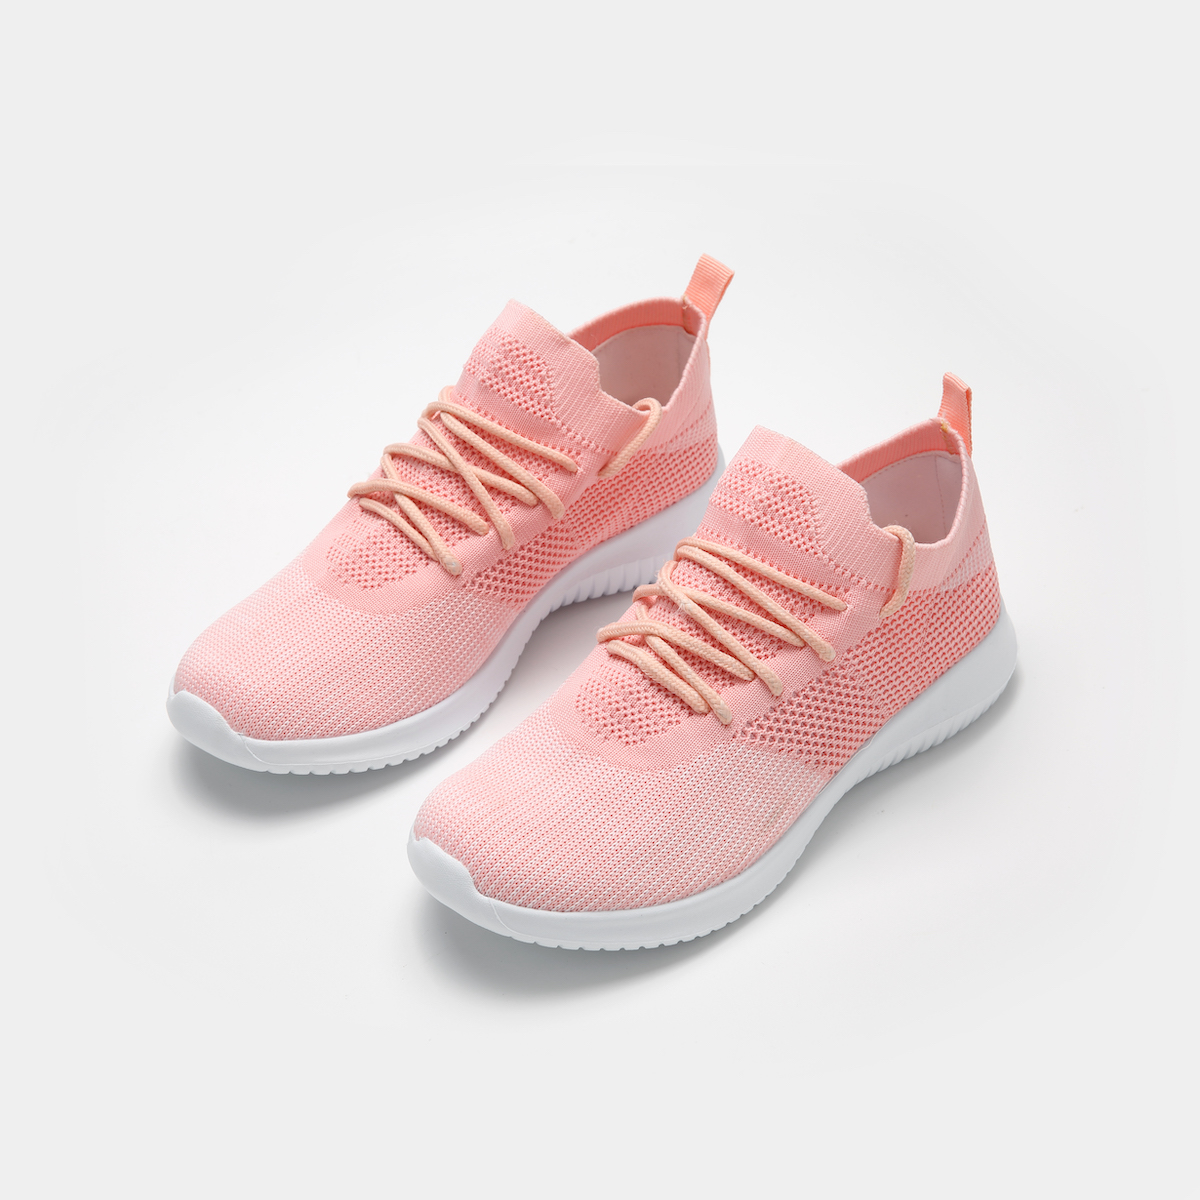 Katedral Vidunderlig Vejfremstillingsproces Sneakers for Women - Pink - model JH102 - FamliiShop.com